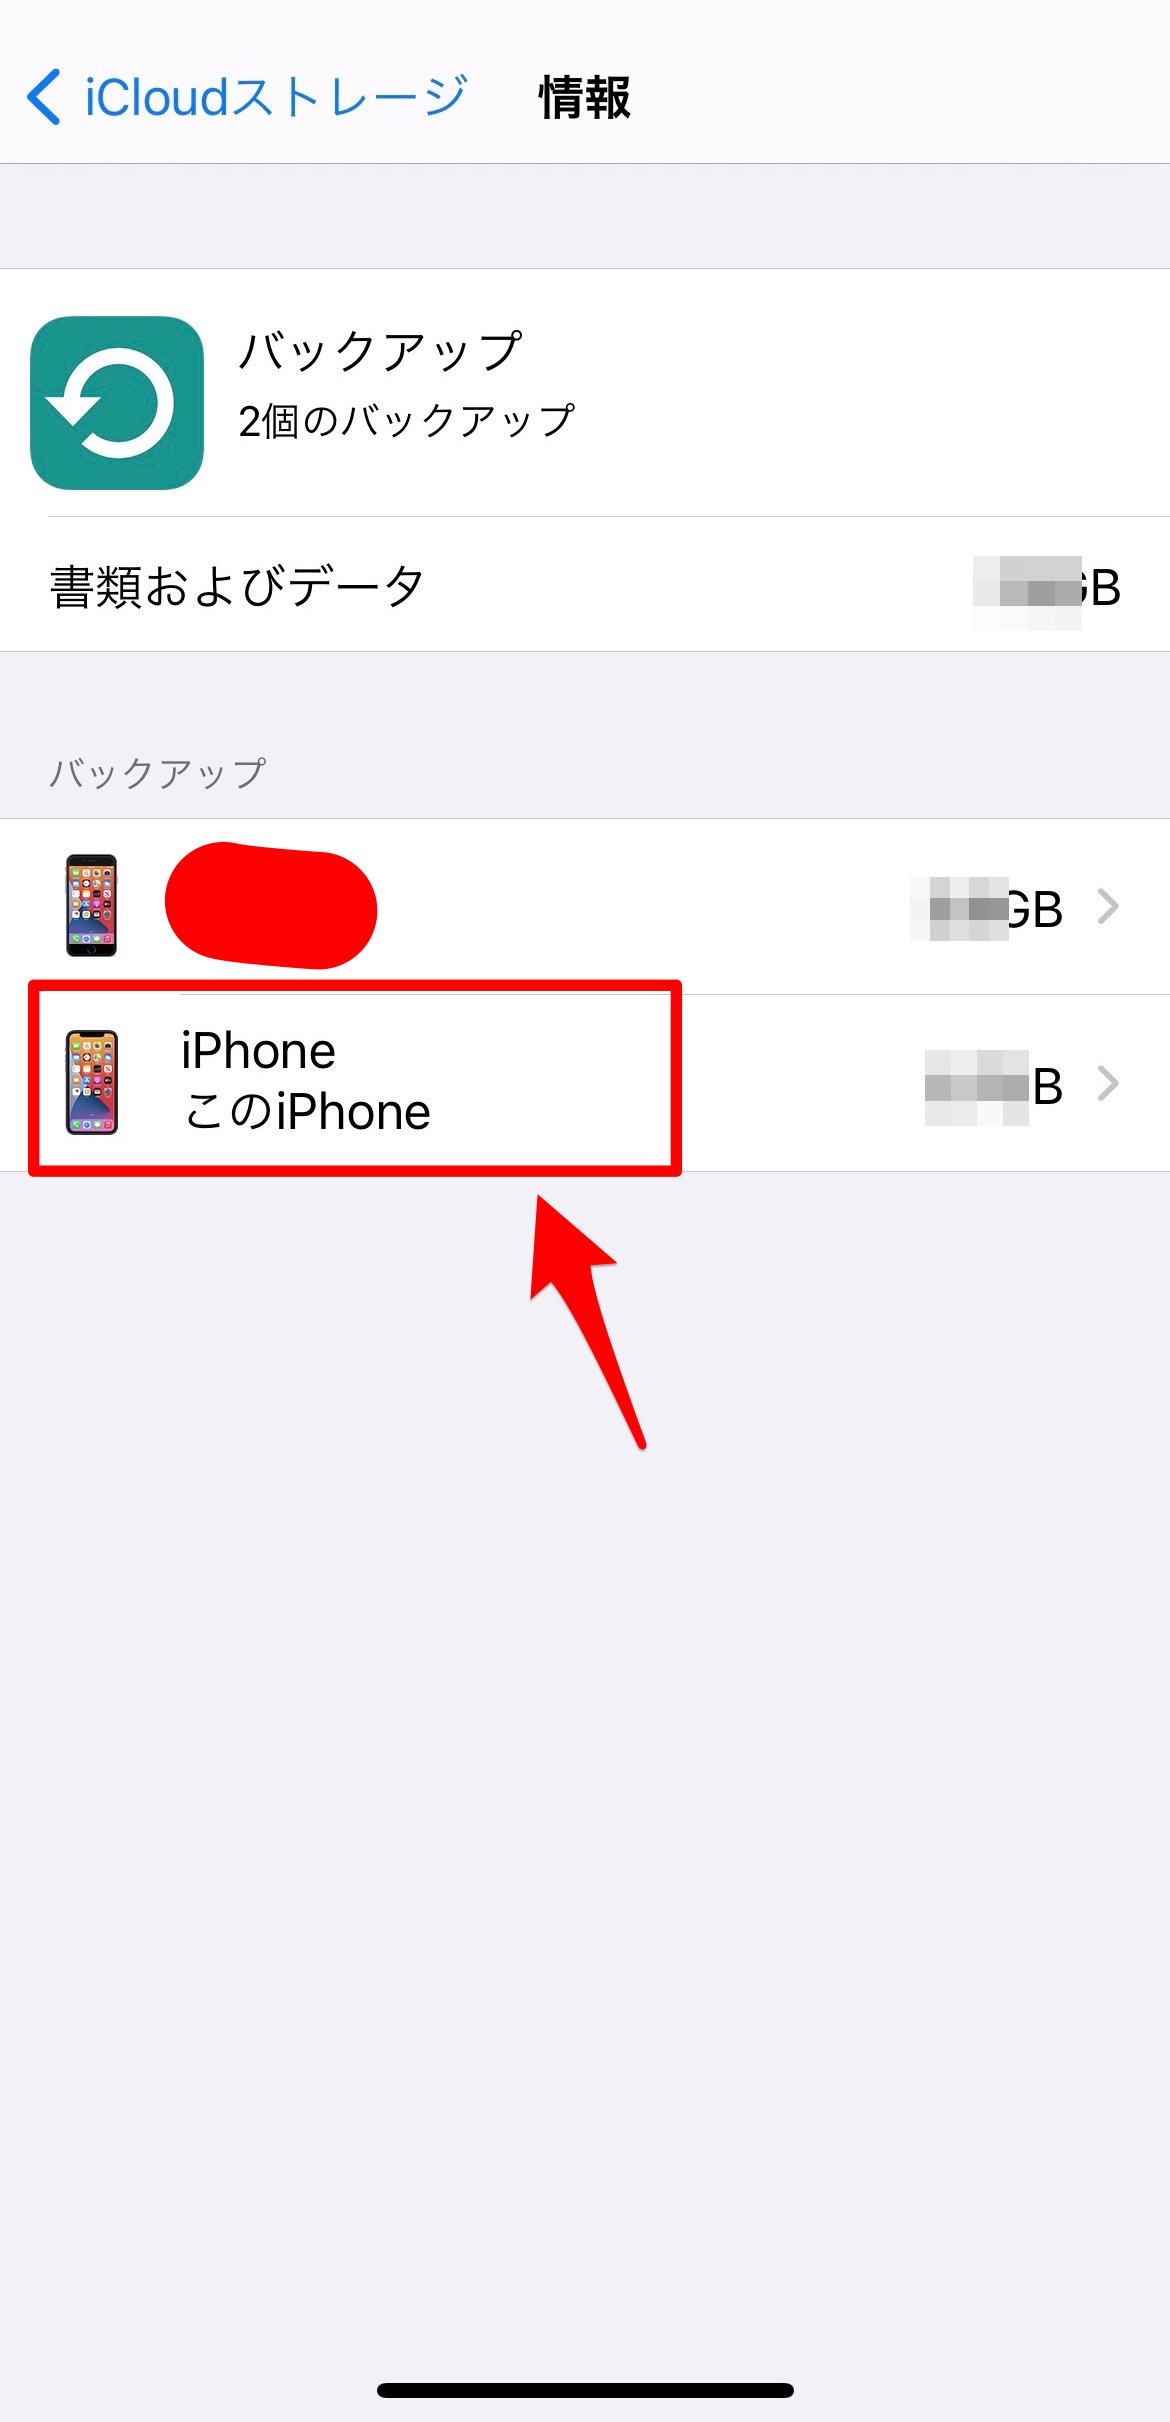 このiPhone2